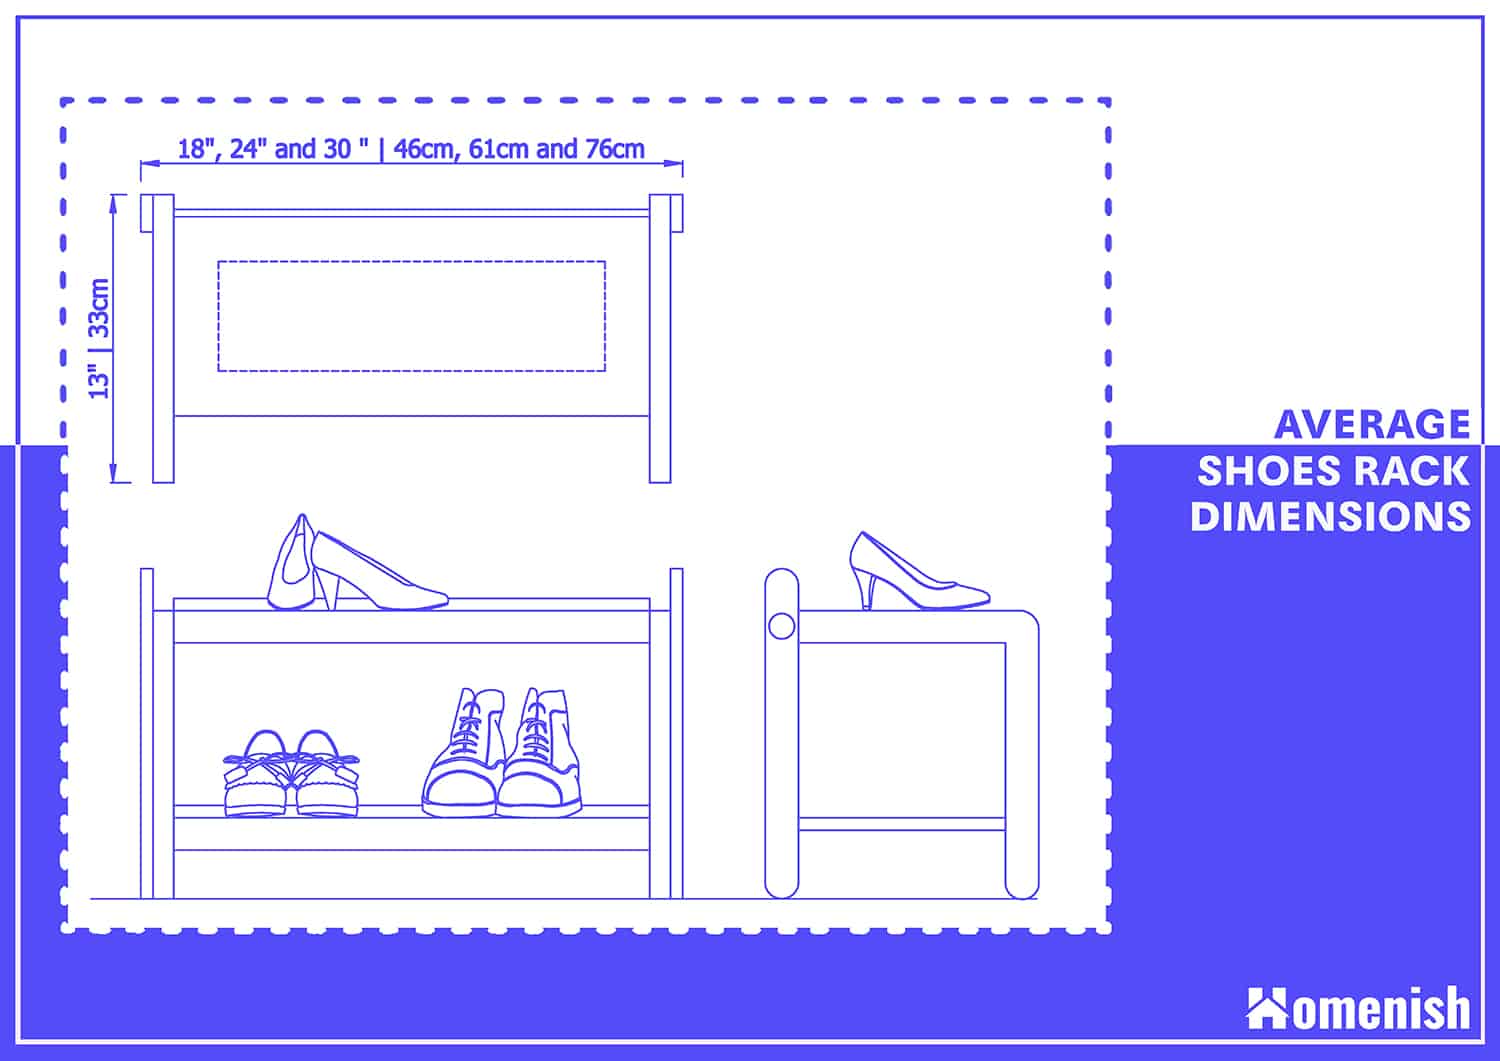 average shoe rack dimensions - Tham khảo kích thước tủ, kệ giầy theo tiêu chuẩn kiến trúc